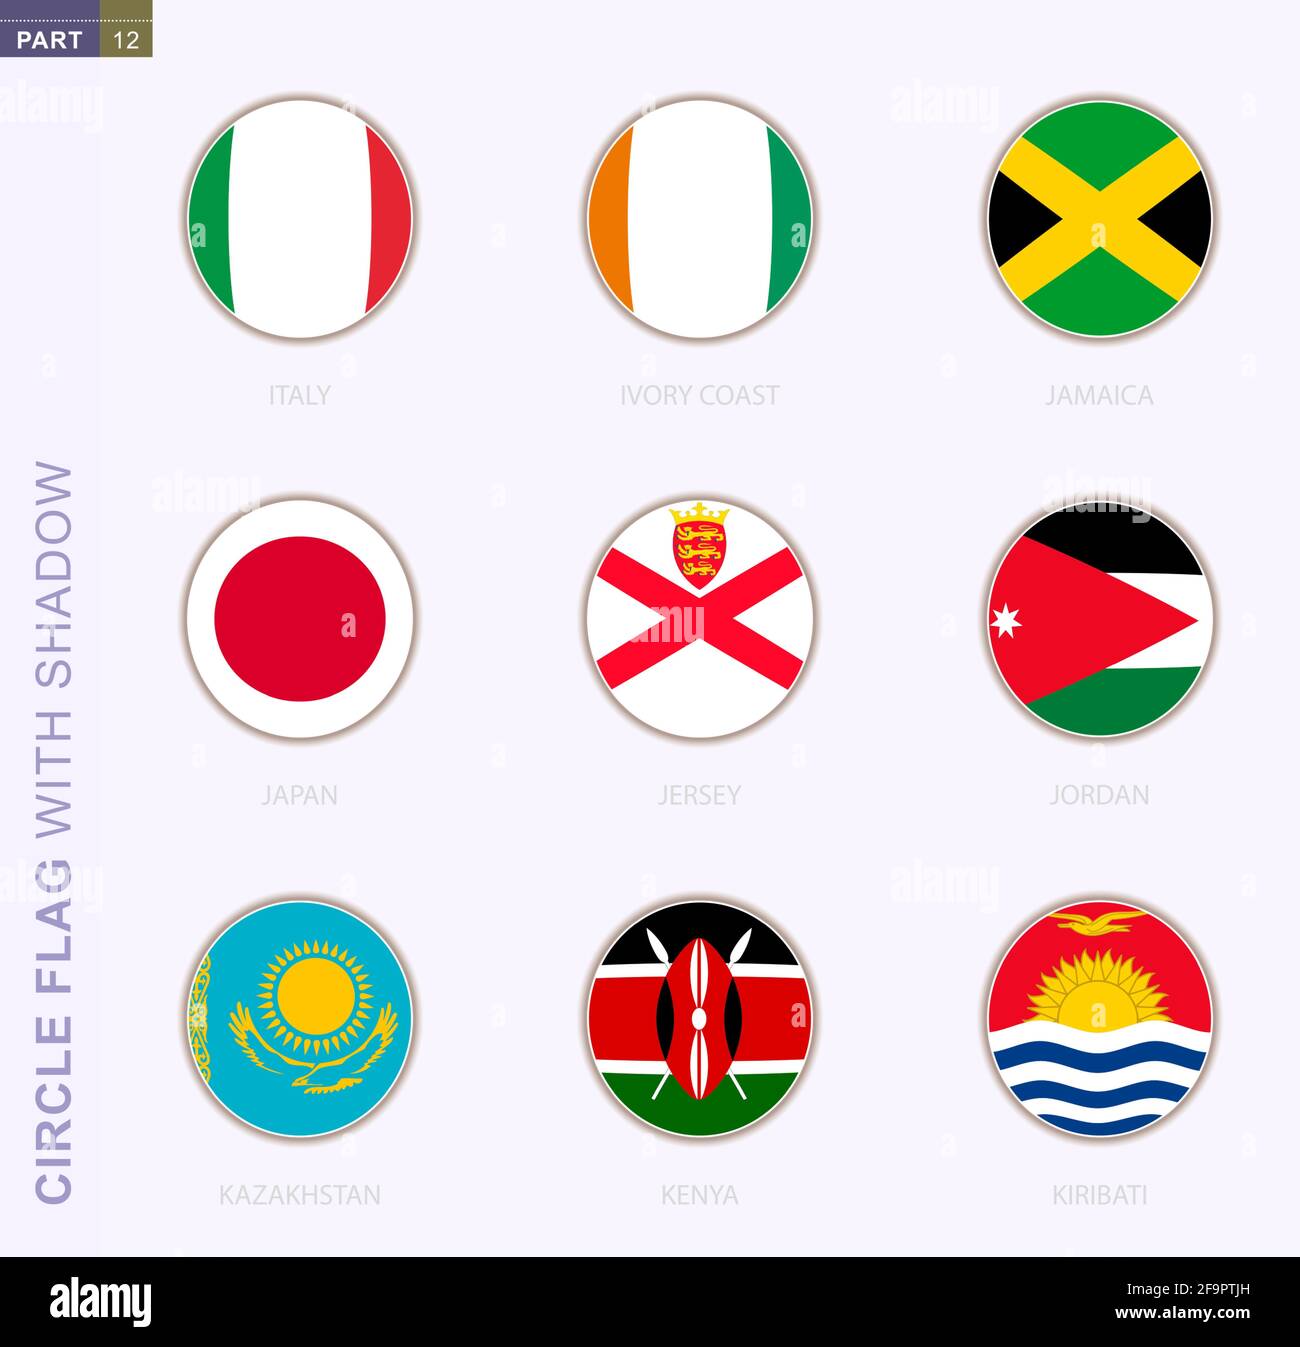 Drapeau circulaire avec ombre, collection de neuf drapeaux ronds. Drapeaux  vectoriels de 9 pays: Italie, Côte d'Ivoire, Jamaïque, Japon, Jersey,  Jordanie, Kazakhstan, K Image Vectorielle Stock - Alamy